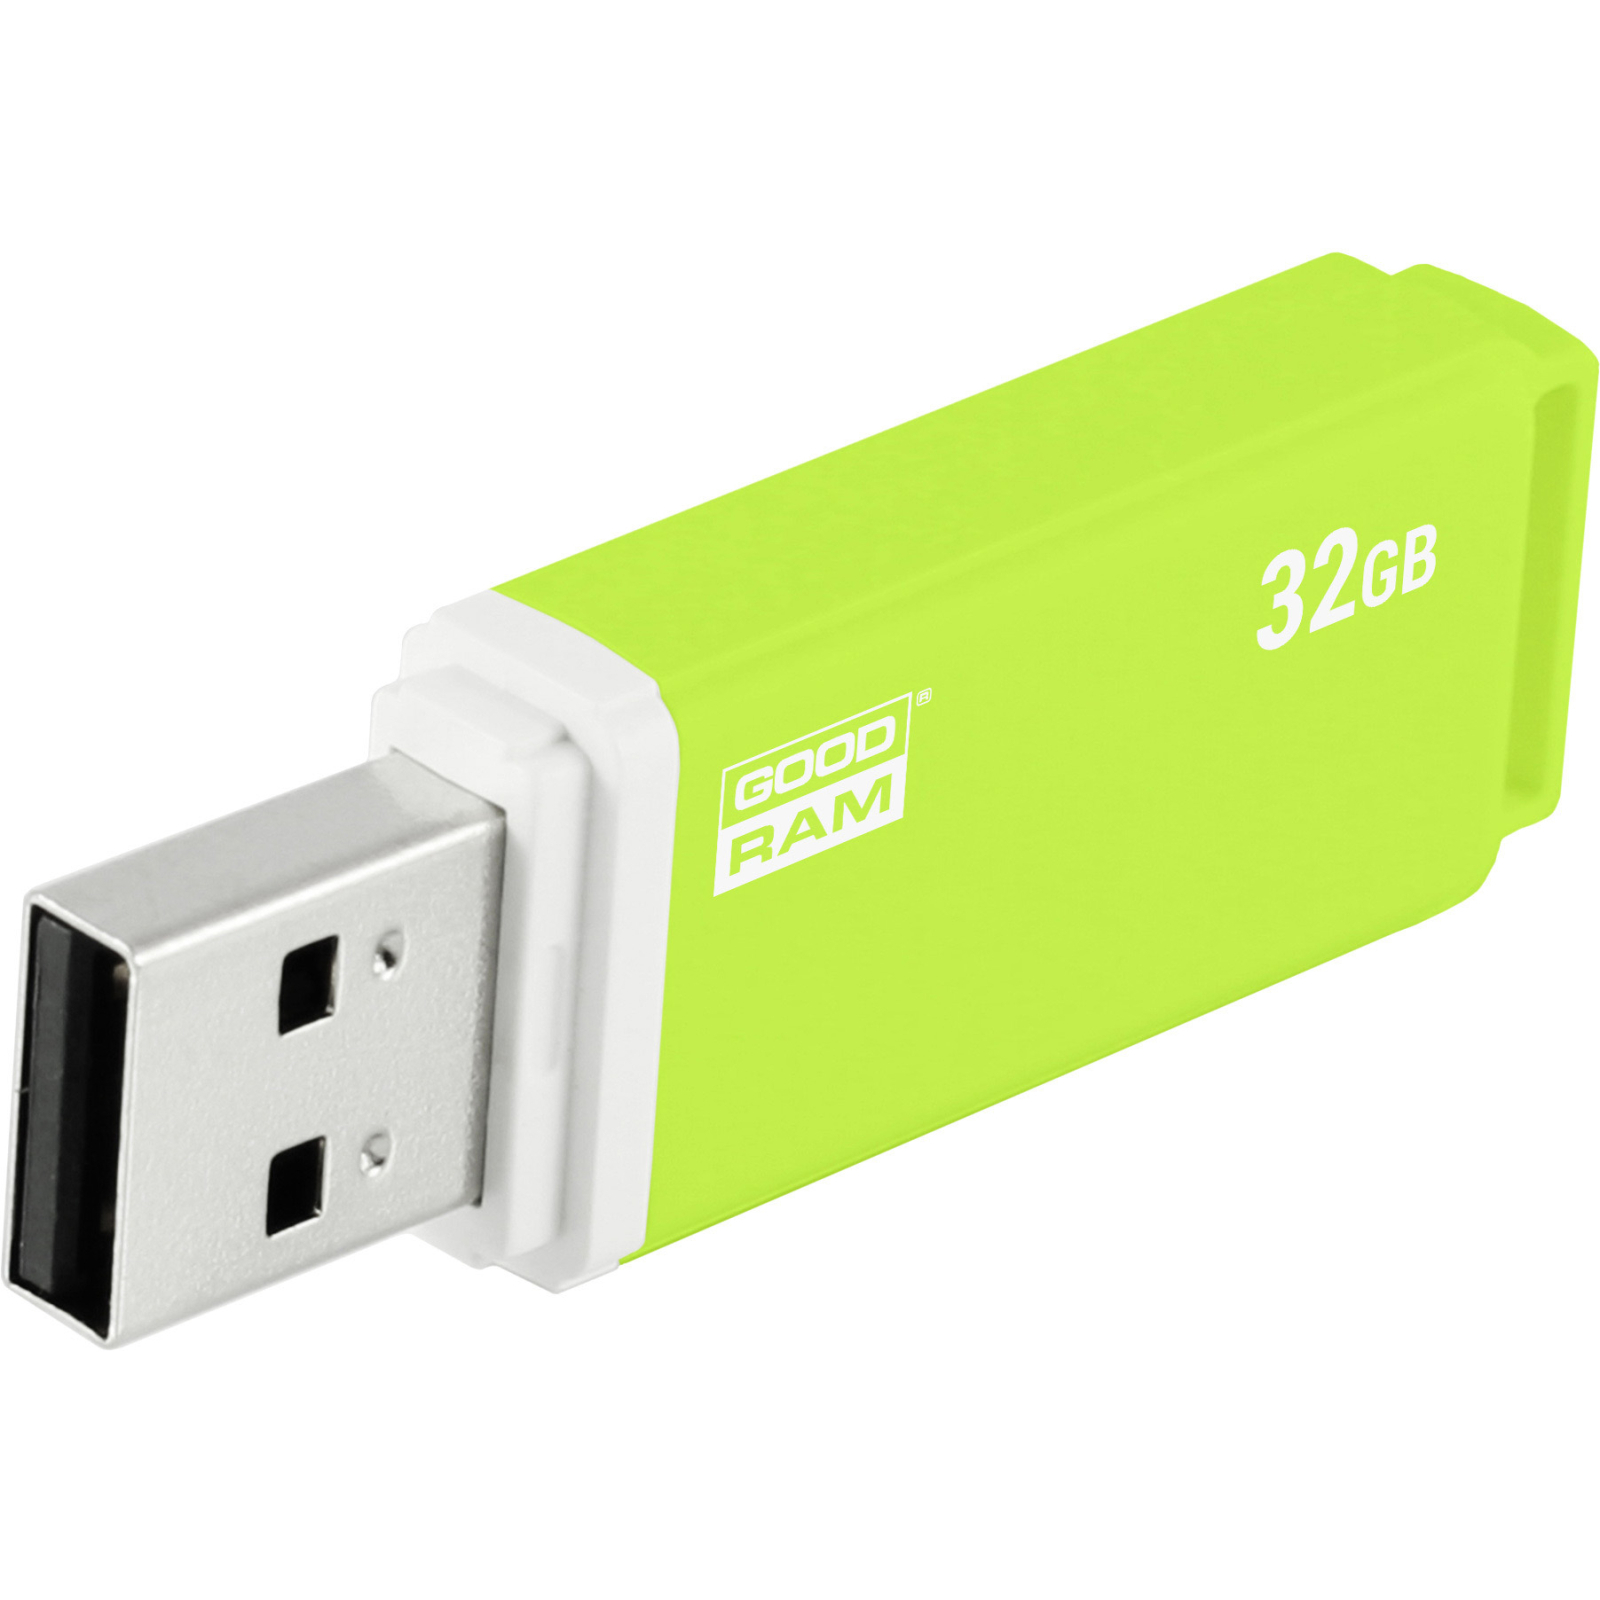 USB флеш накопитель Goodram 32GB UMO2 Orange Green USB 2.0 (UMO2-0320OGR11) изображение 5